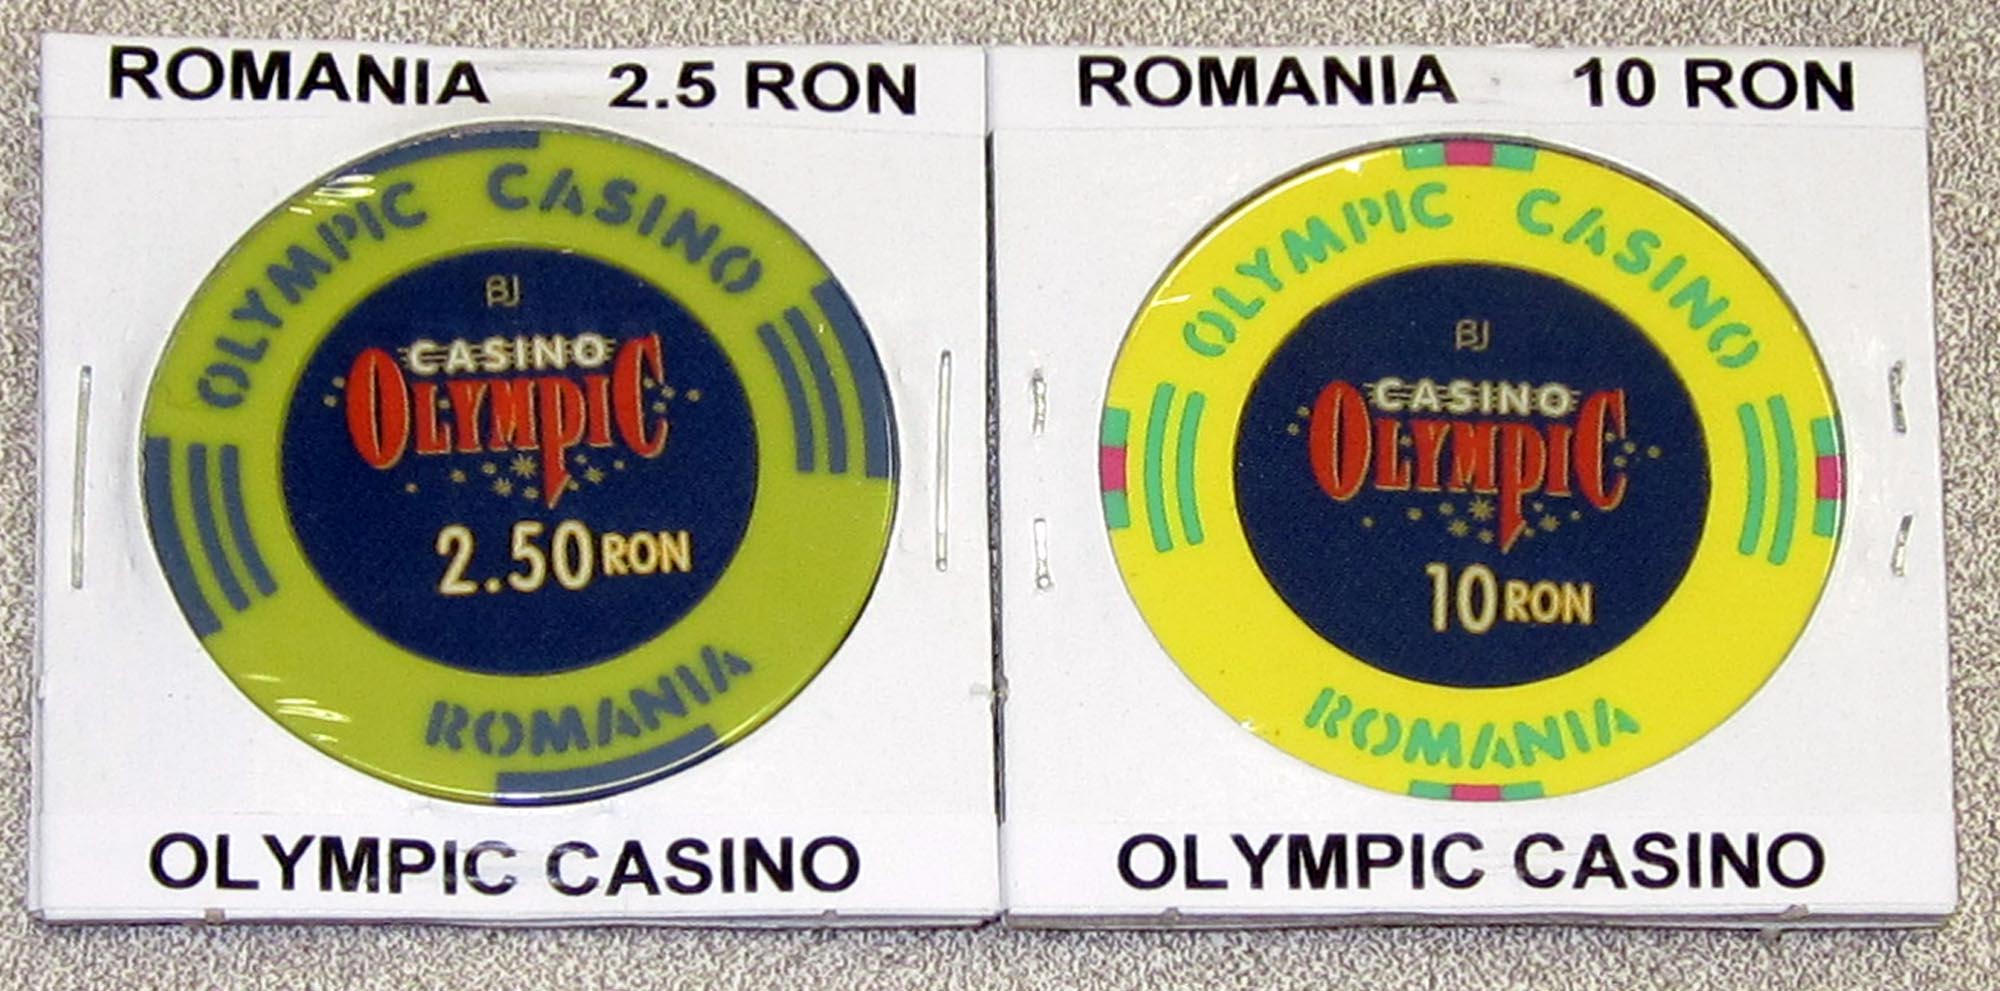 Romania_Casino_Chips.jpg